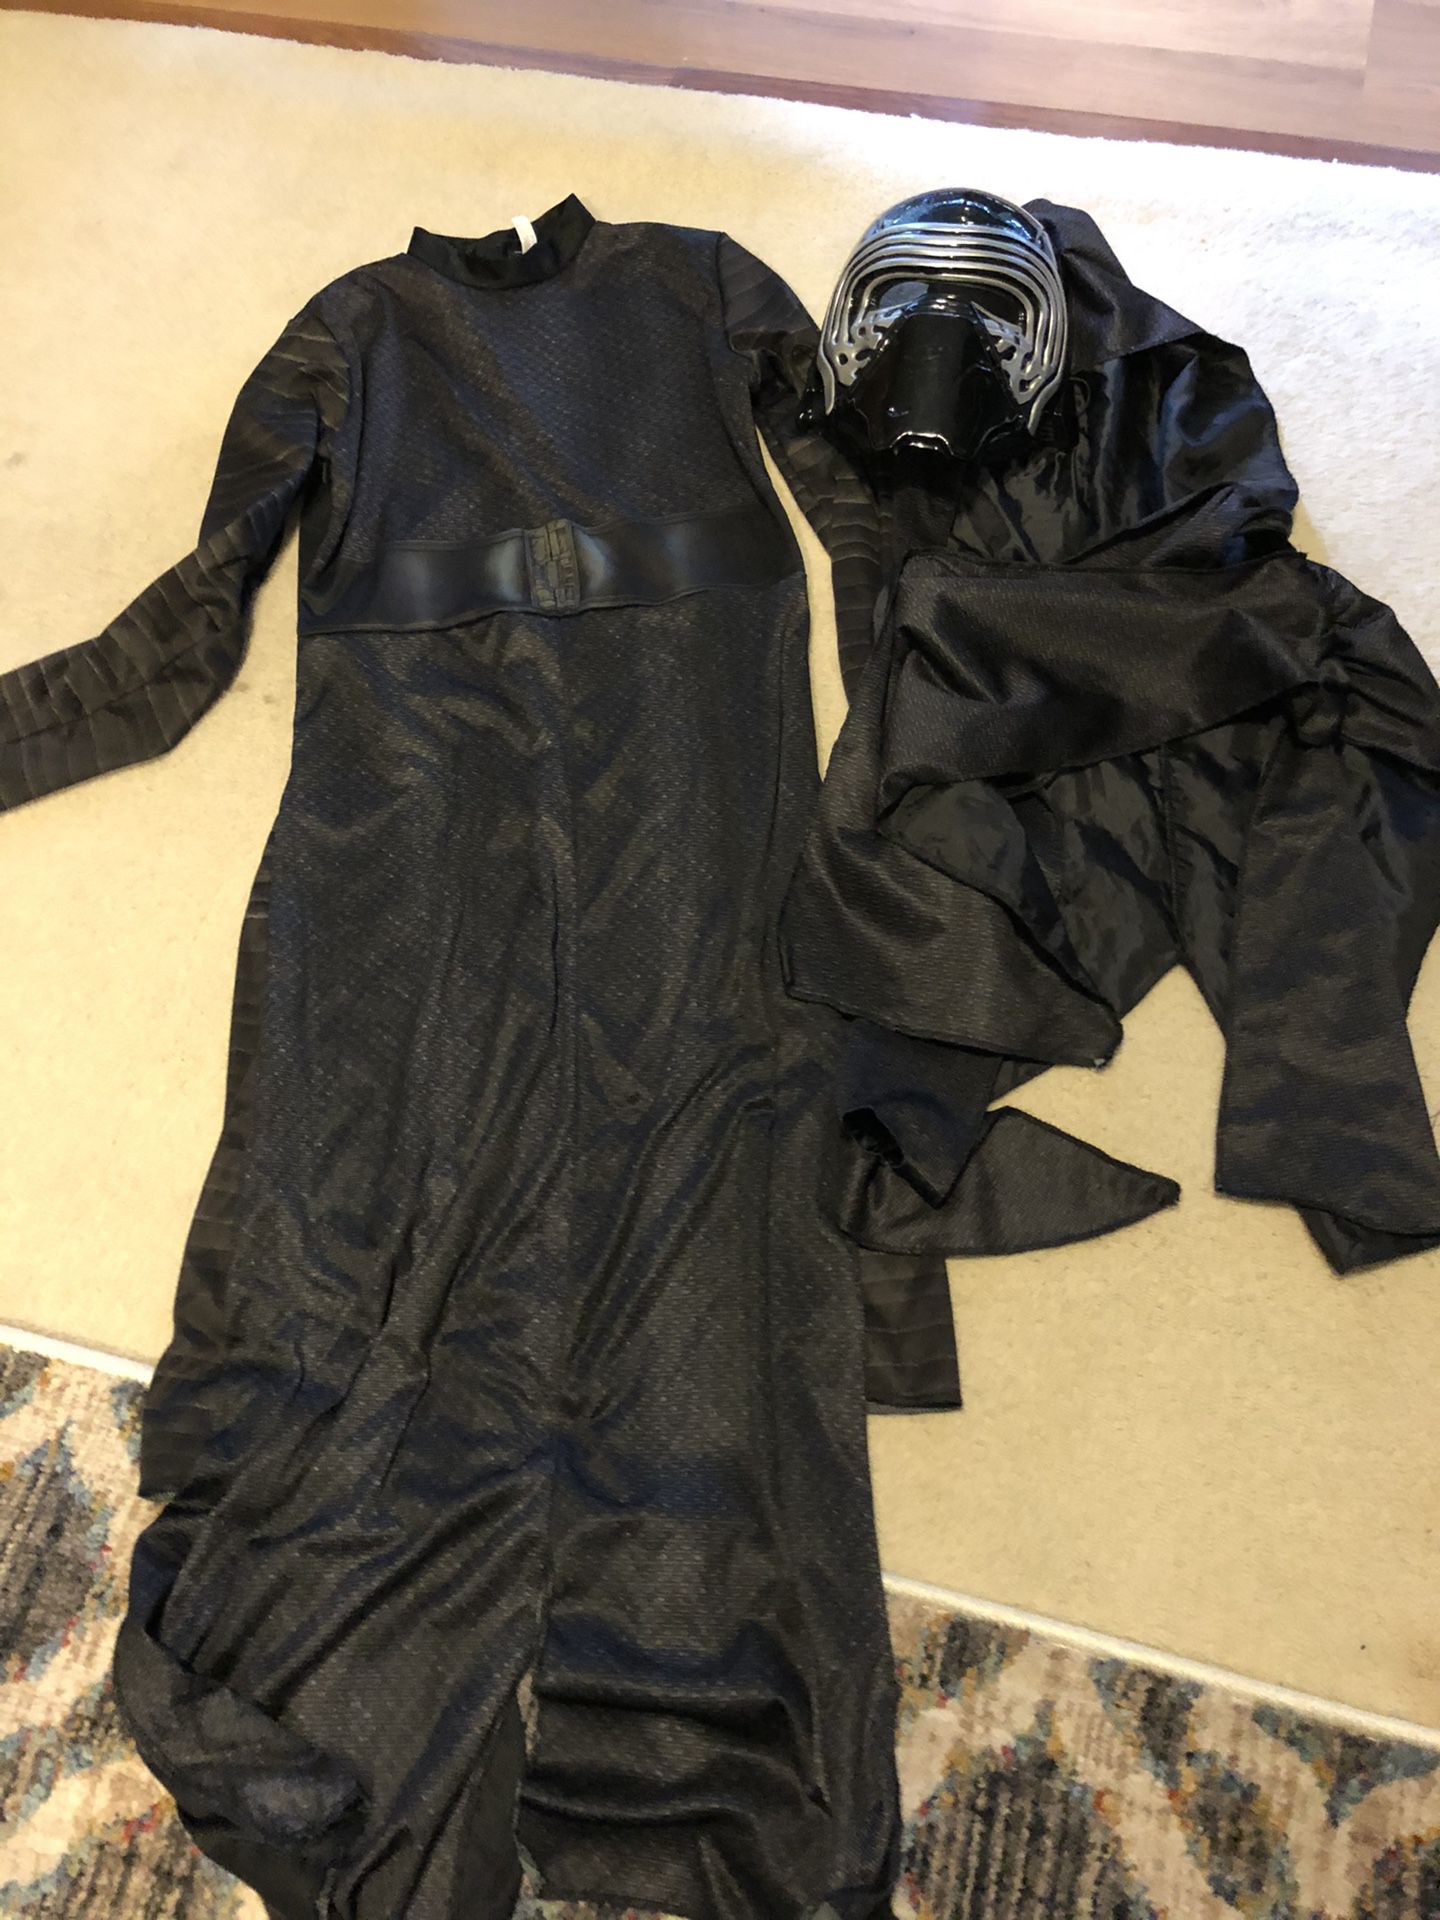 Star Wars Kylo Ren costume child size 12